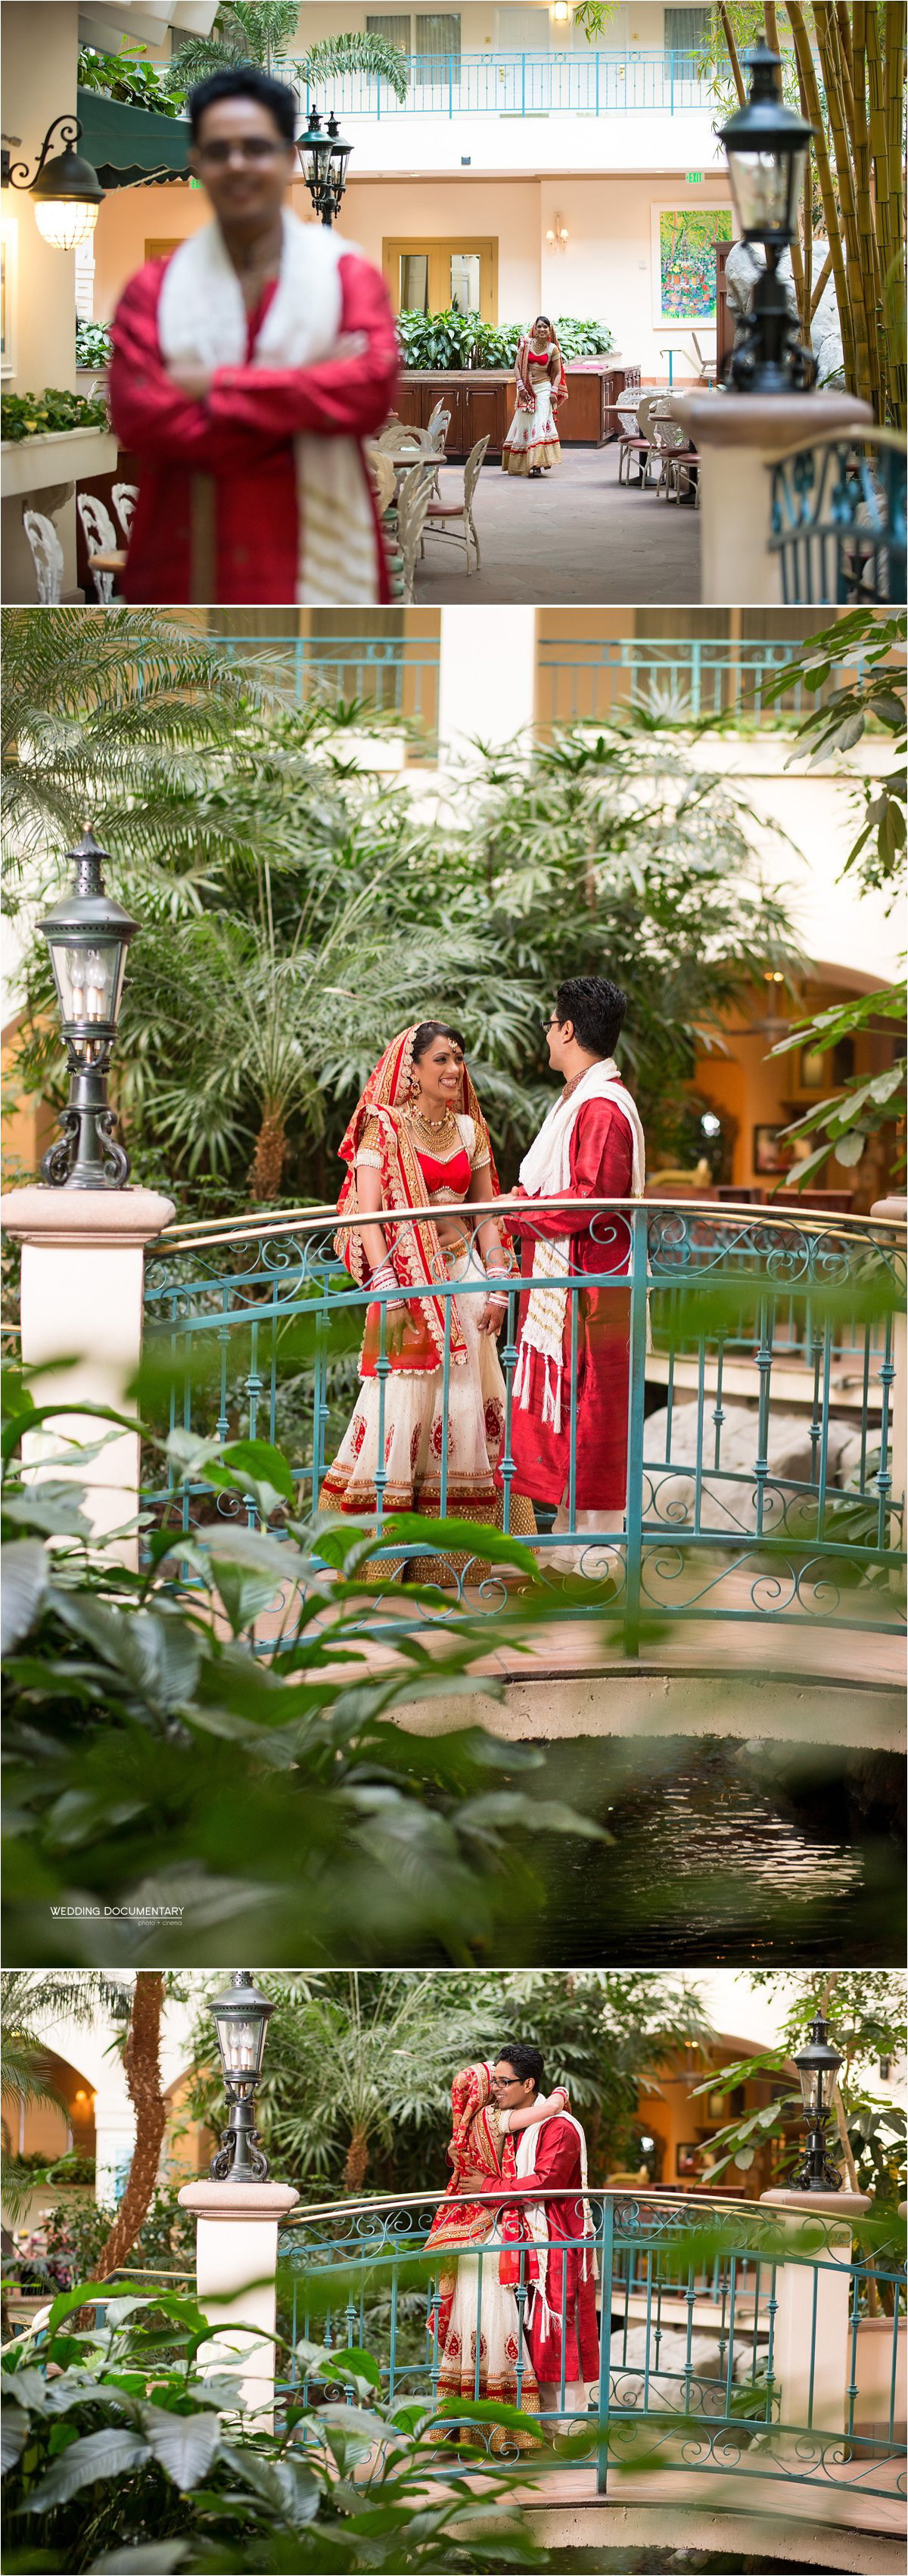 Indian_Wedding_Photos_Embassy_Suites_Milpitas_0012